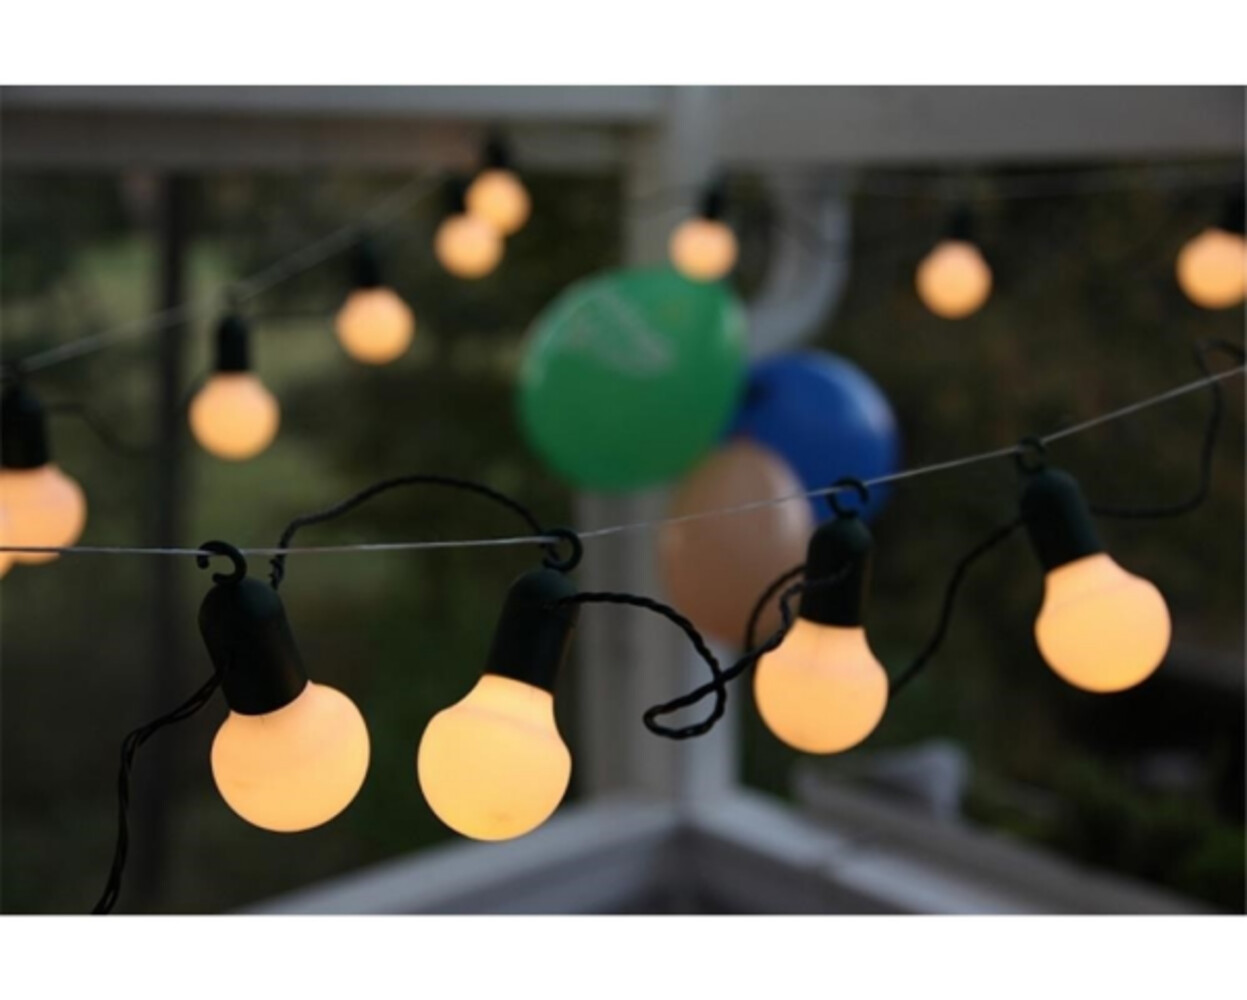 Stimmungsvolle warmweiße LED Lichterkette von Star Trading, outdoor-tauglich, mit grünem Kabel und 20 Teilen